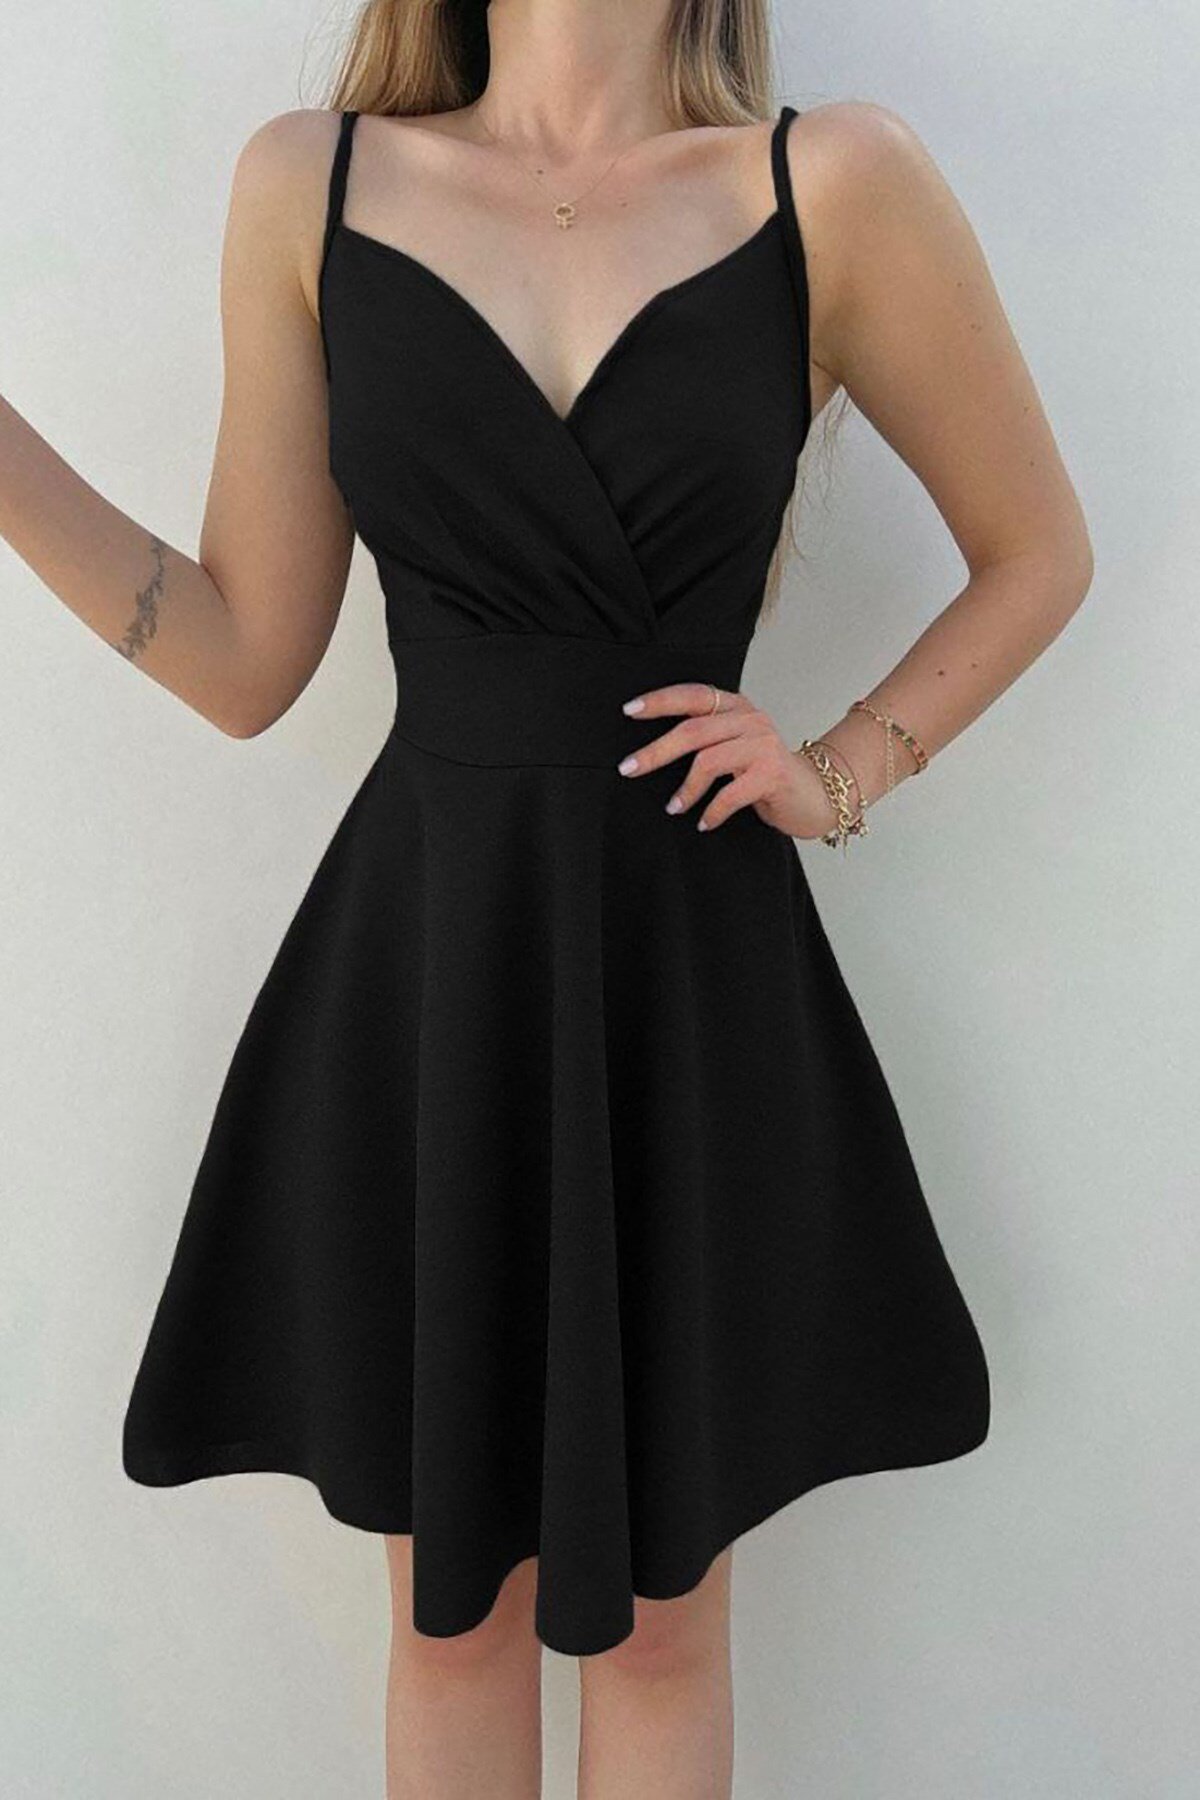 Deafox Siyah Krep Kumaş İnce Askılı Mini Kloş Elbise